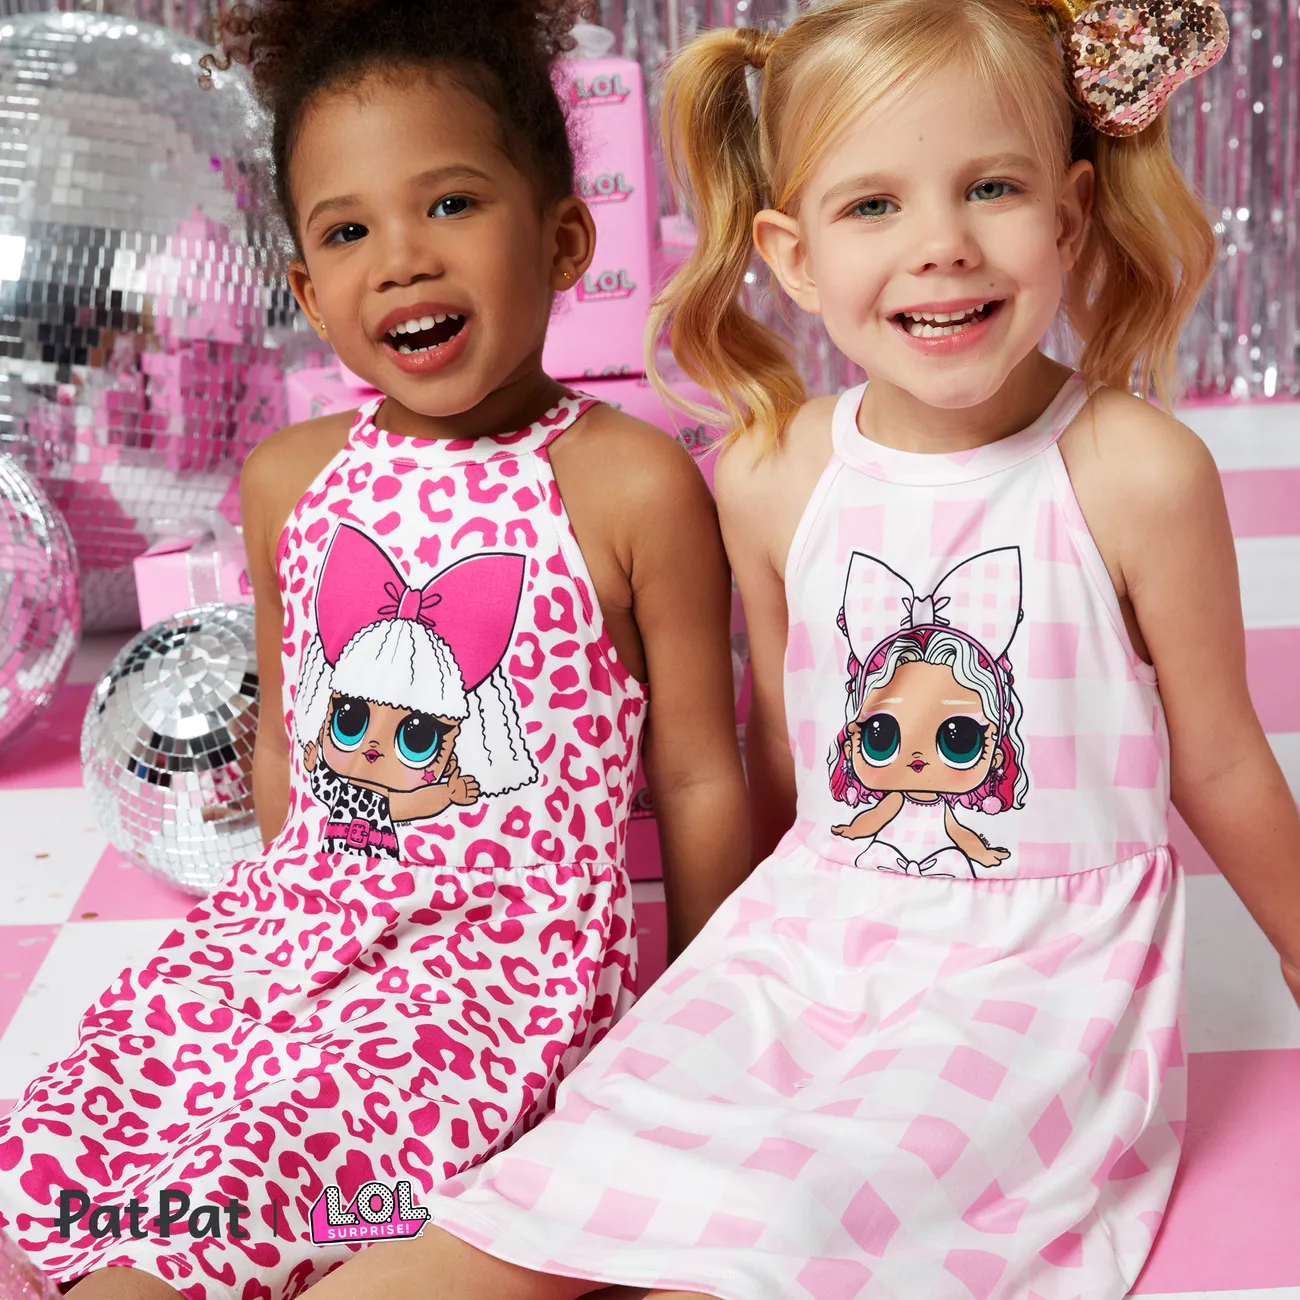 L.O.L. SURPRISE! Toddler Girl/Kid Girl sleeveless round neck dress
 Pink big image 1